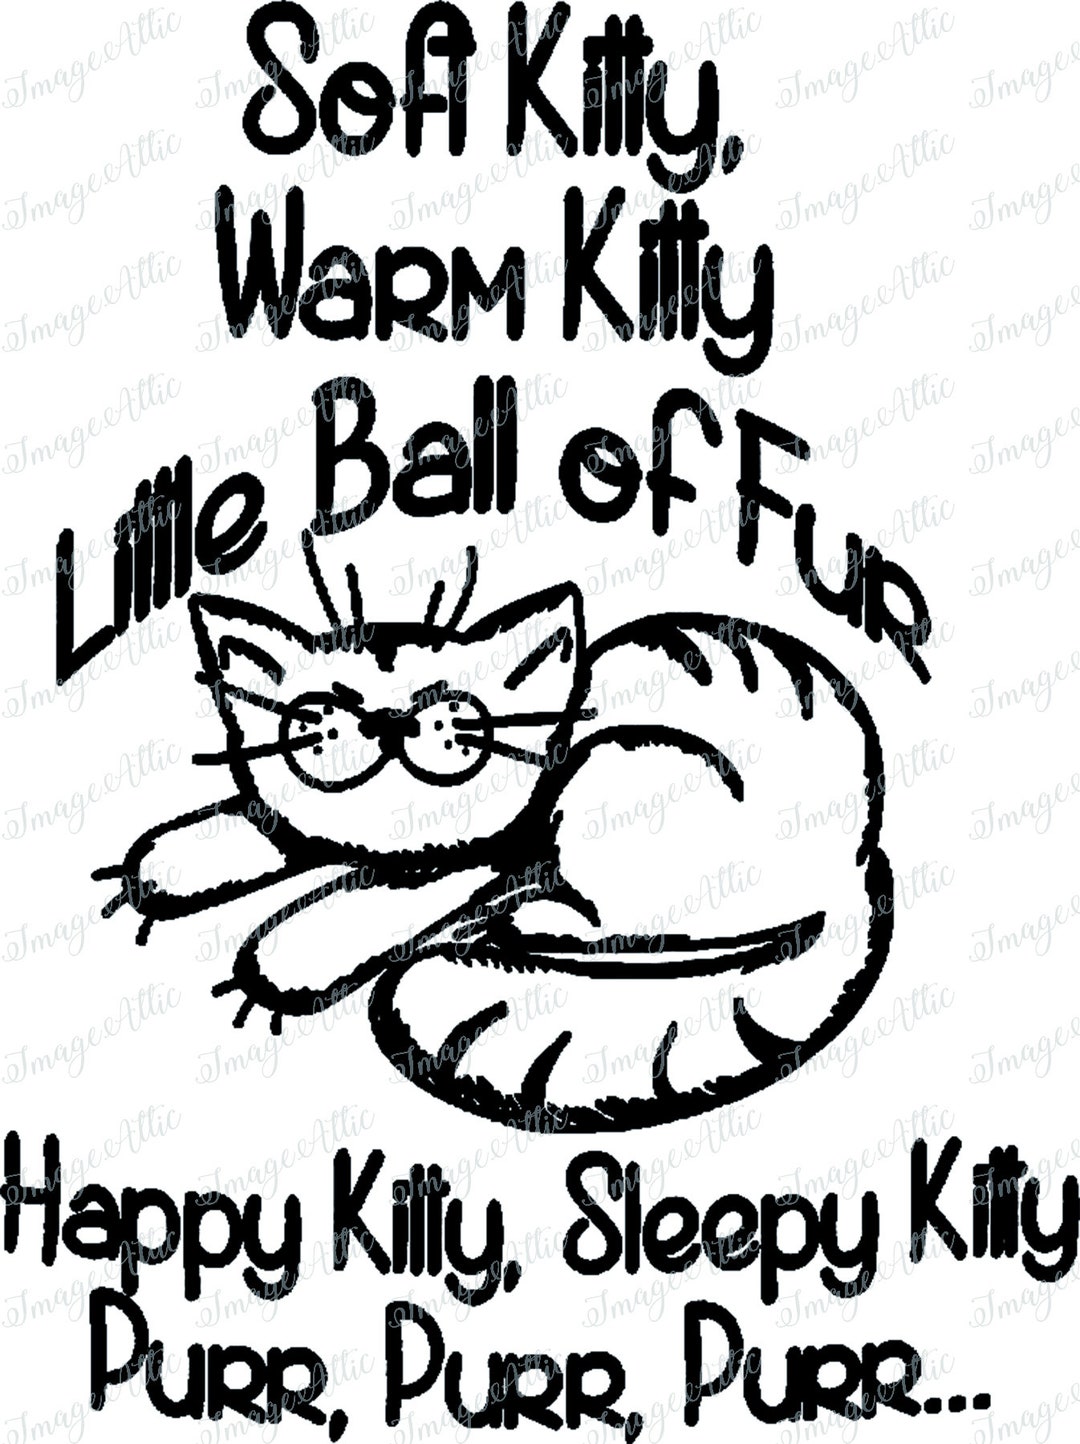 Soft kitty little ball of fur happy kitty Cat T S' Water Bottle